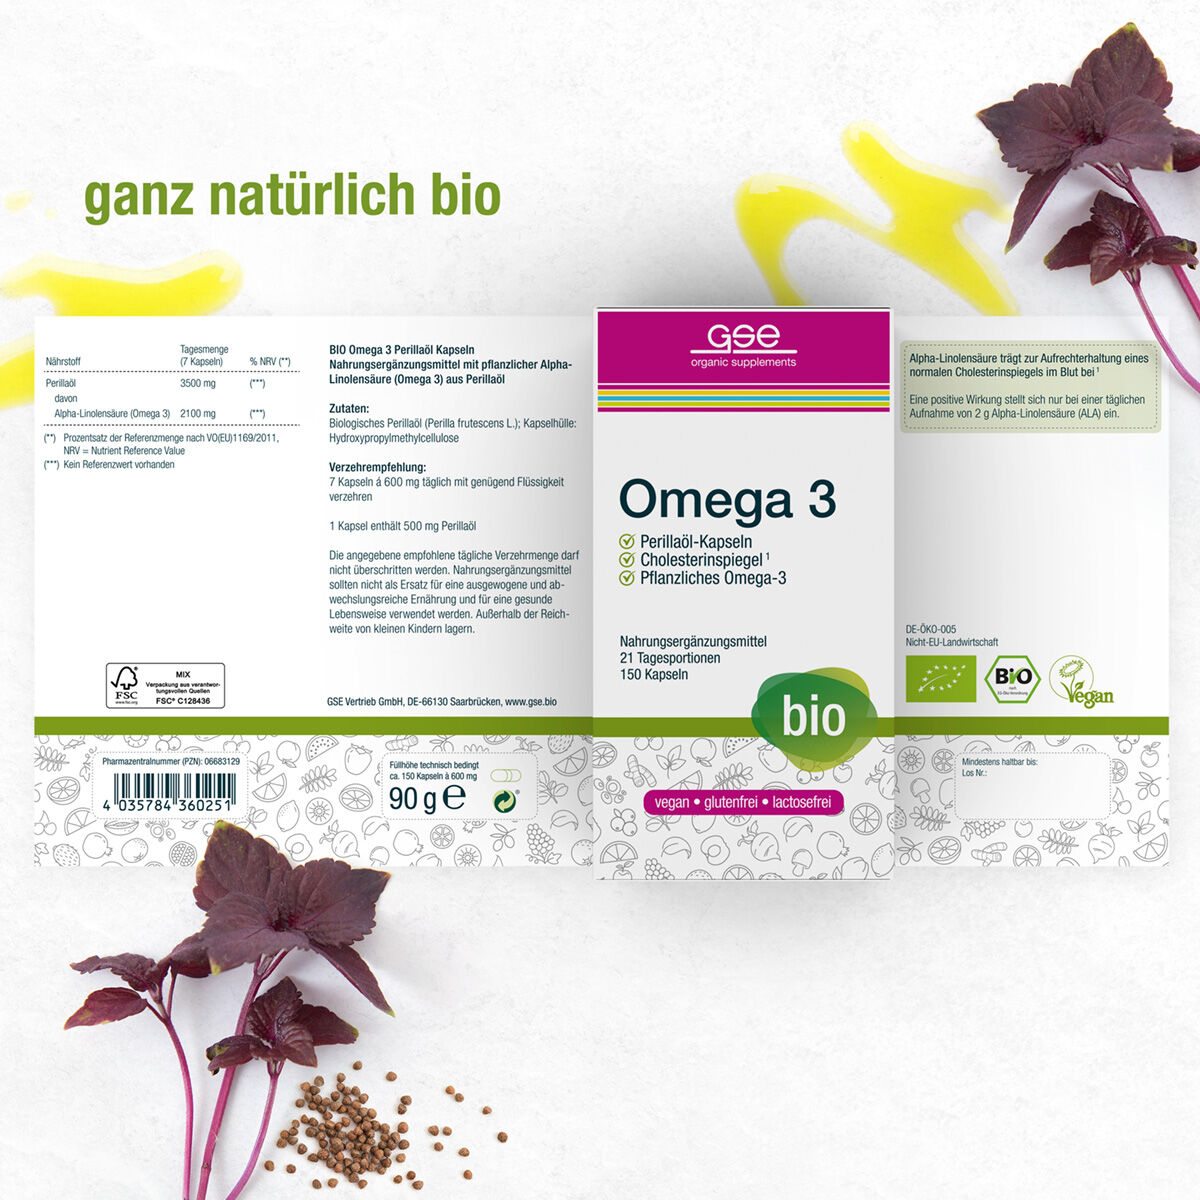 Omega 3 Perillaöl Kapseln (Bio)